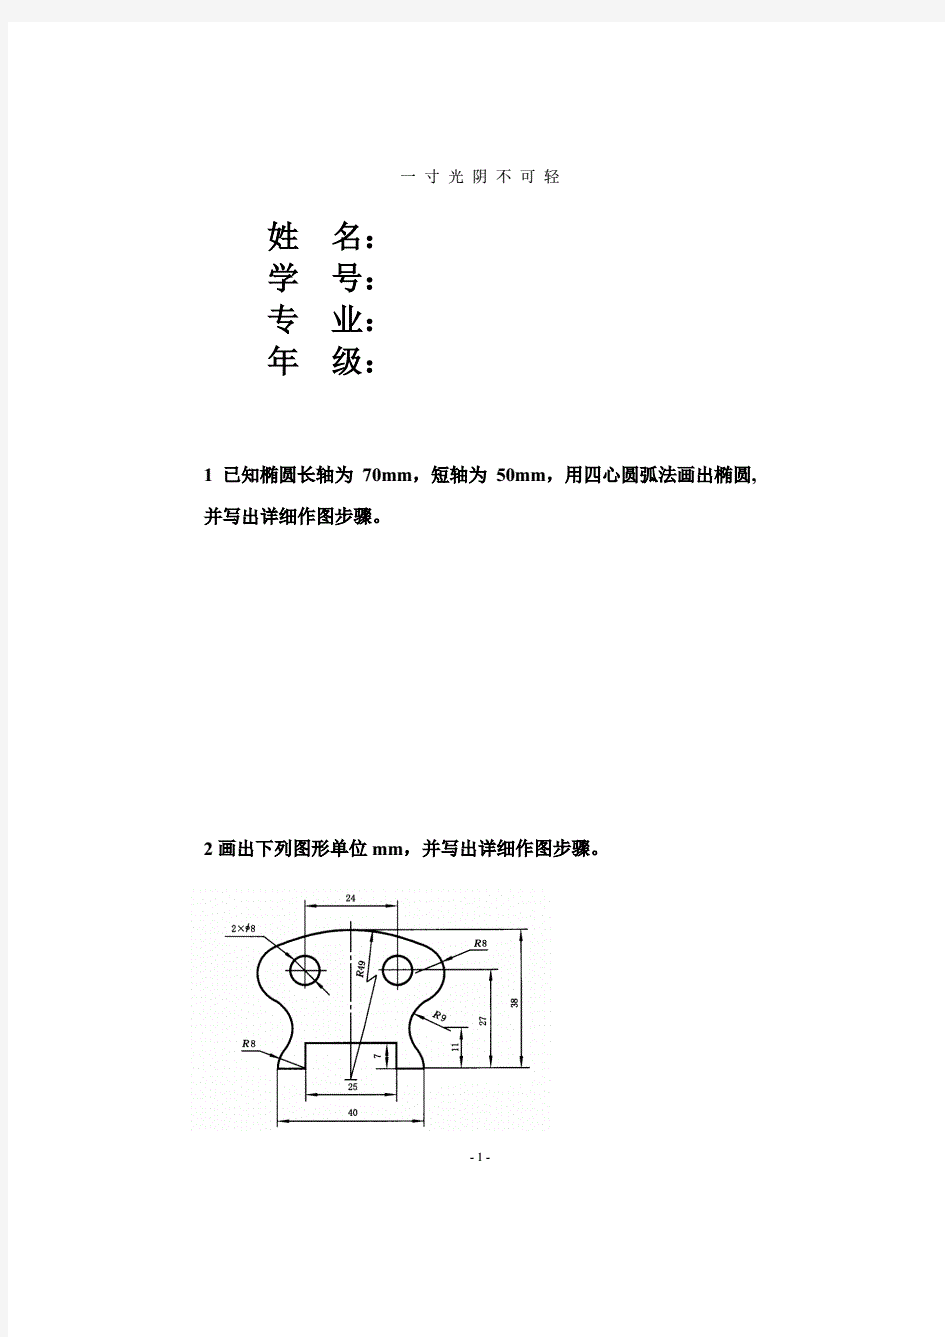 工程制图作业PDF打印.pdf